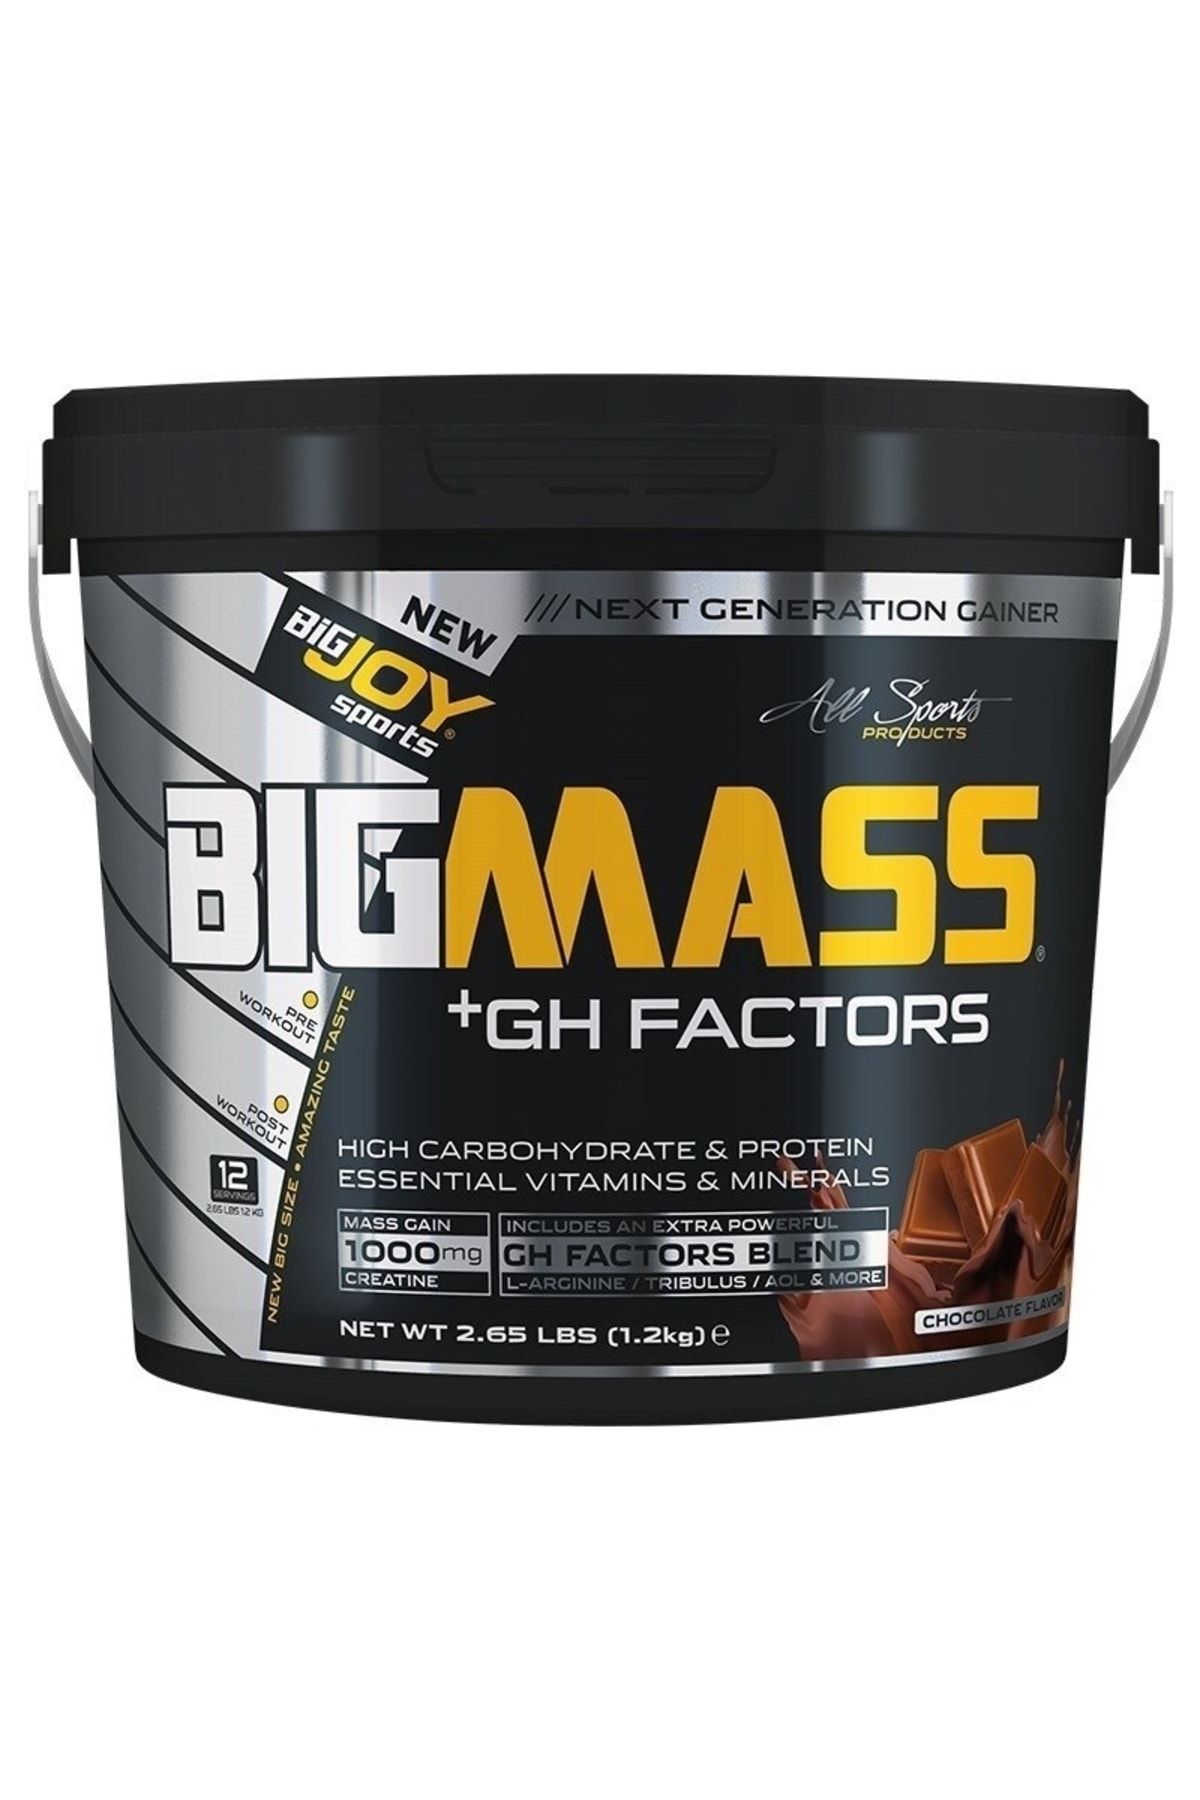 Big Joy Big Mass +gh Factors 1200 Gr